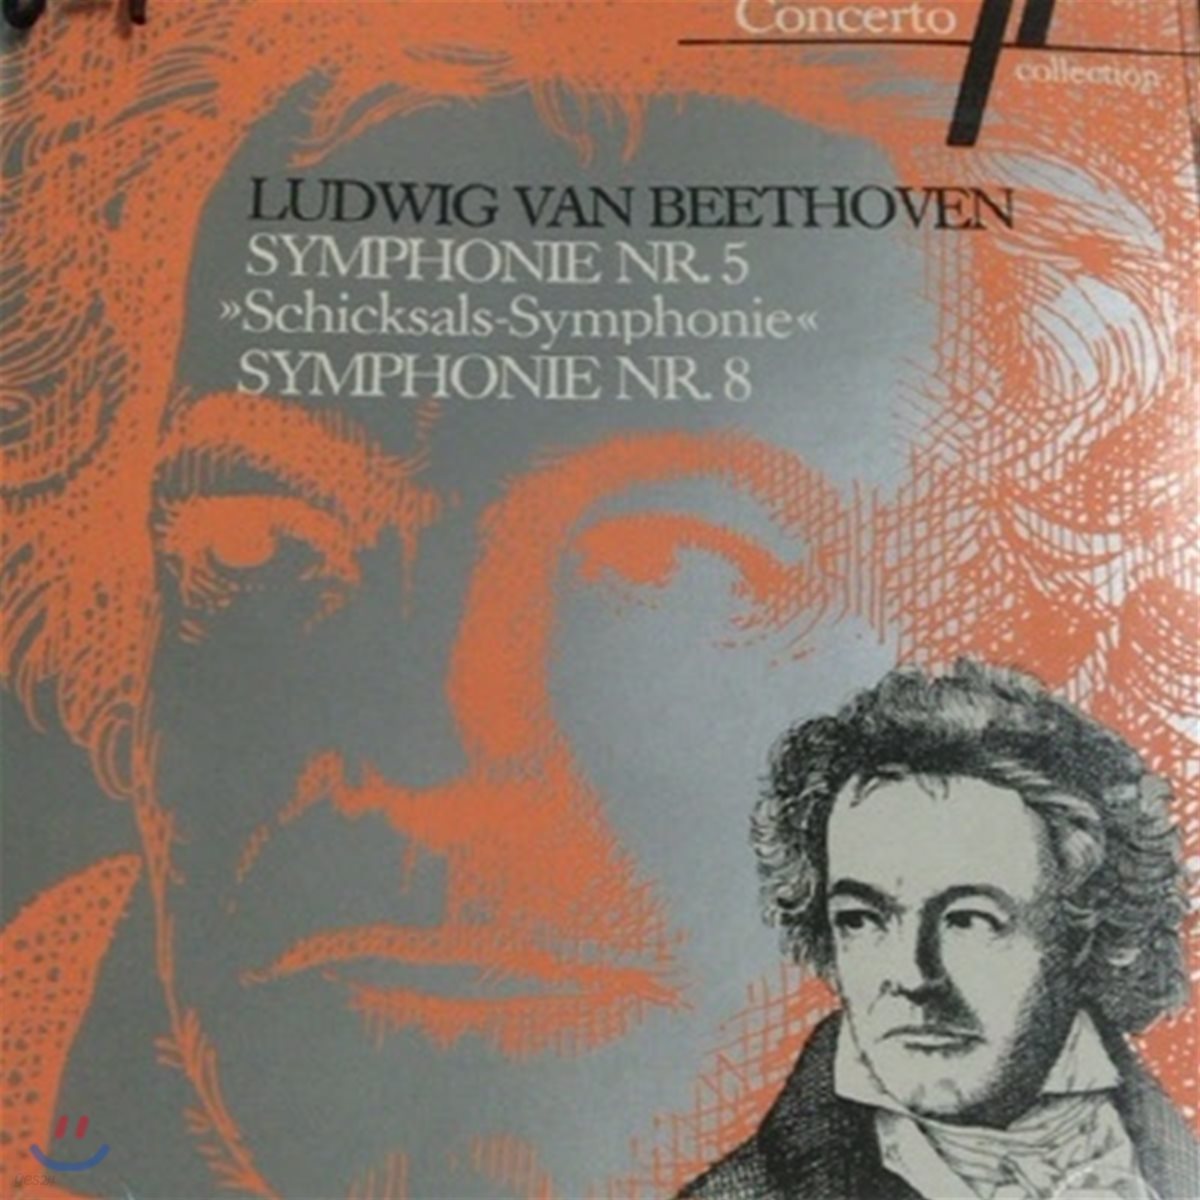 [중고] Hans Swarowsky / Beethoven : Symphonie nr. 5 & 8 (수입/int820708)